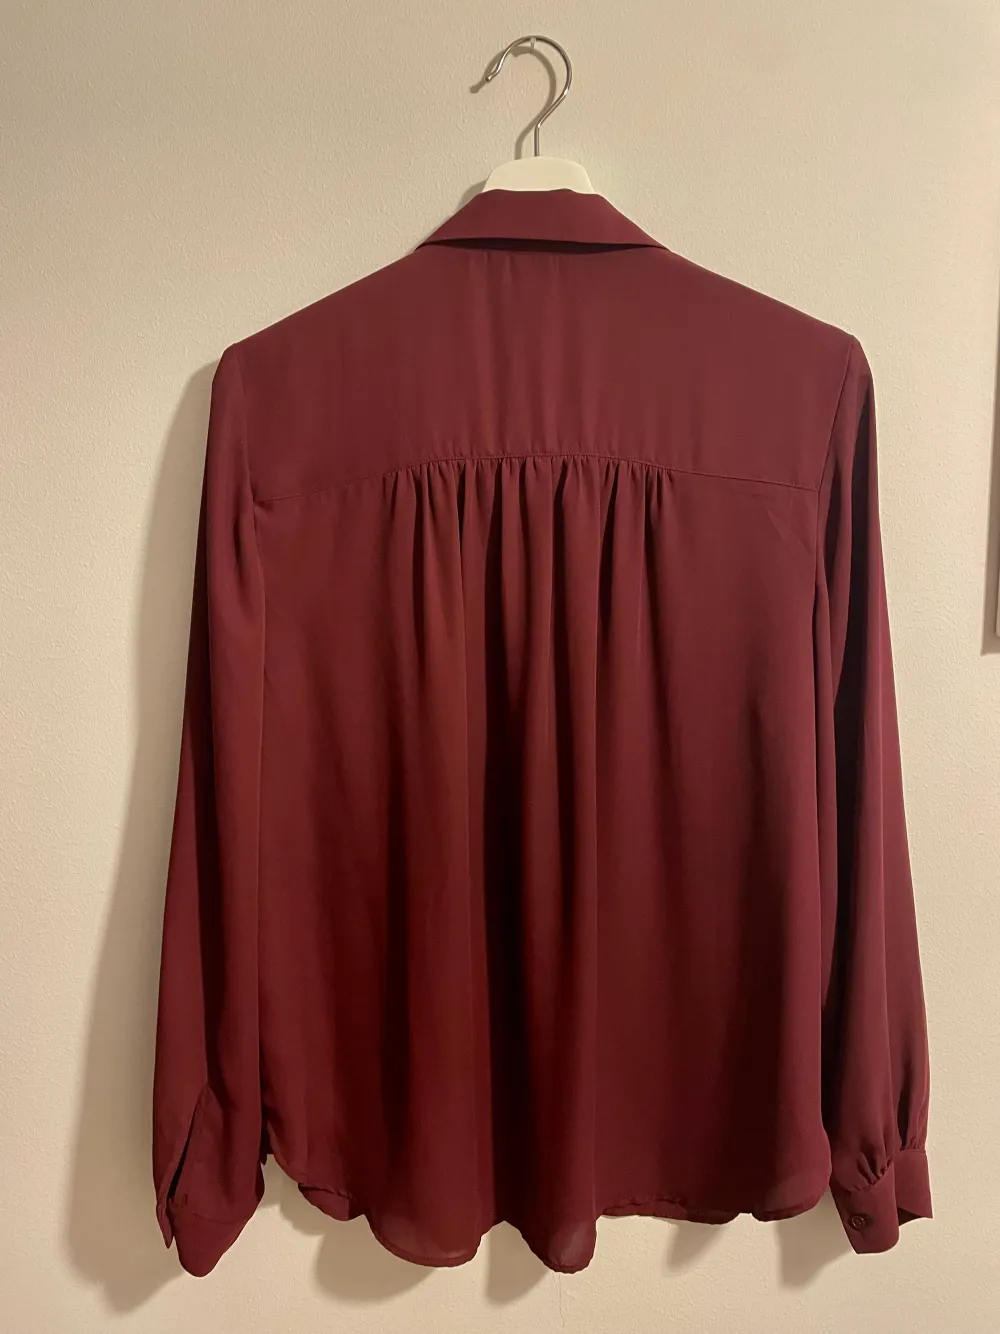 Elegant tröja i vinröd färg, passar till vardagen och festen, aldrig använt. Tröjor & Koftor.